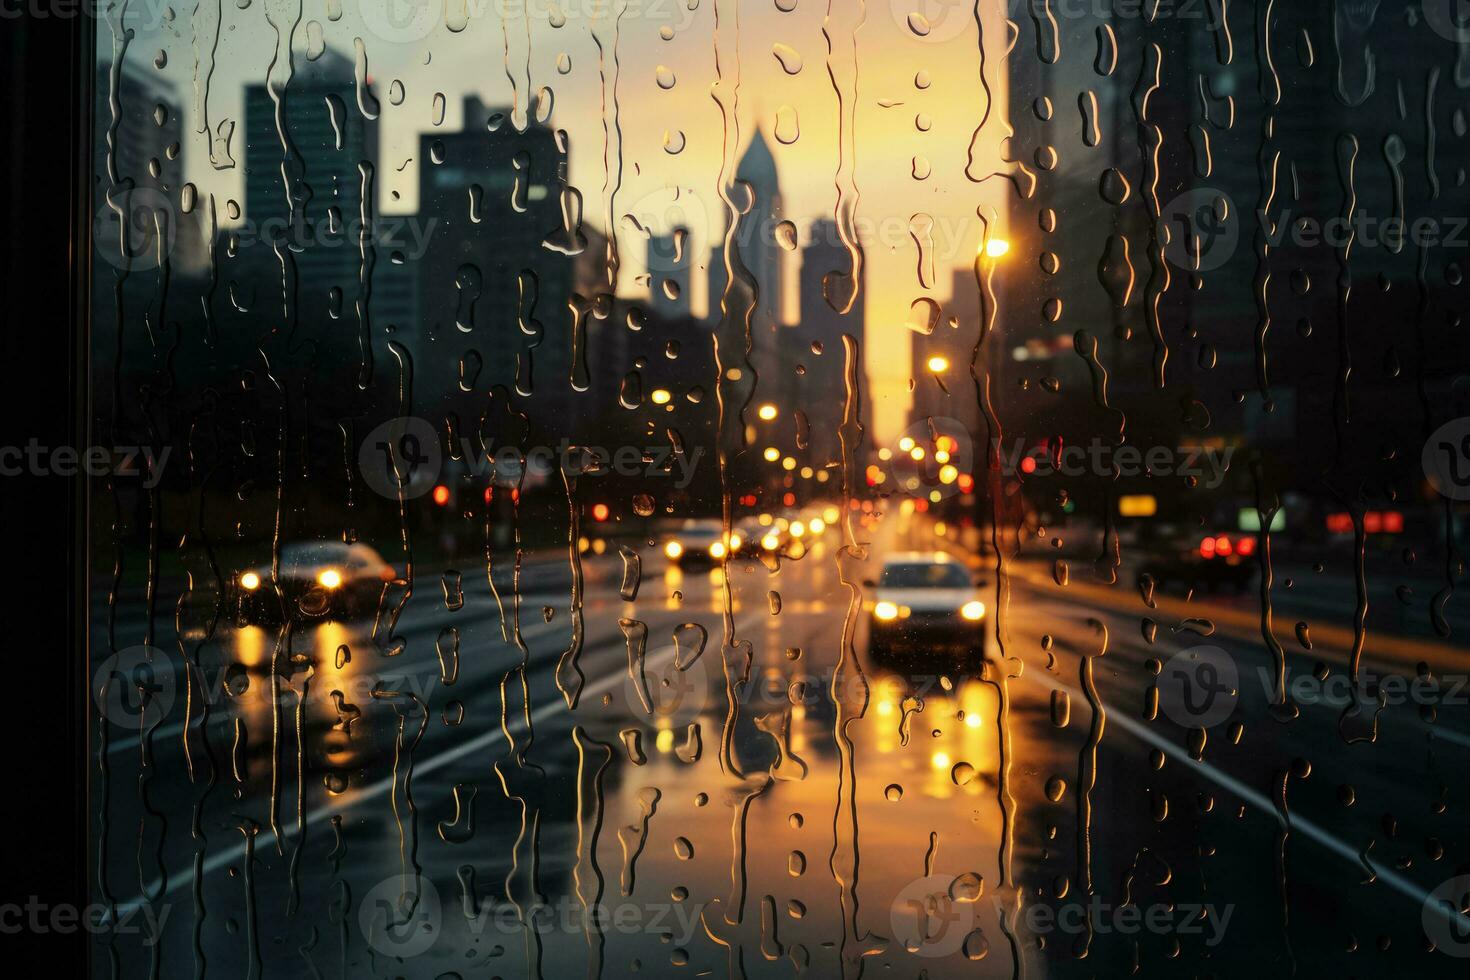 aftekenen stadsgezicht reflecties gevangen genomen in regendruppel gespikkeld venster post zondvloed kalmte foto